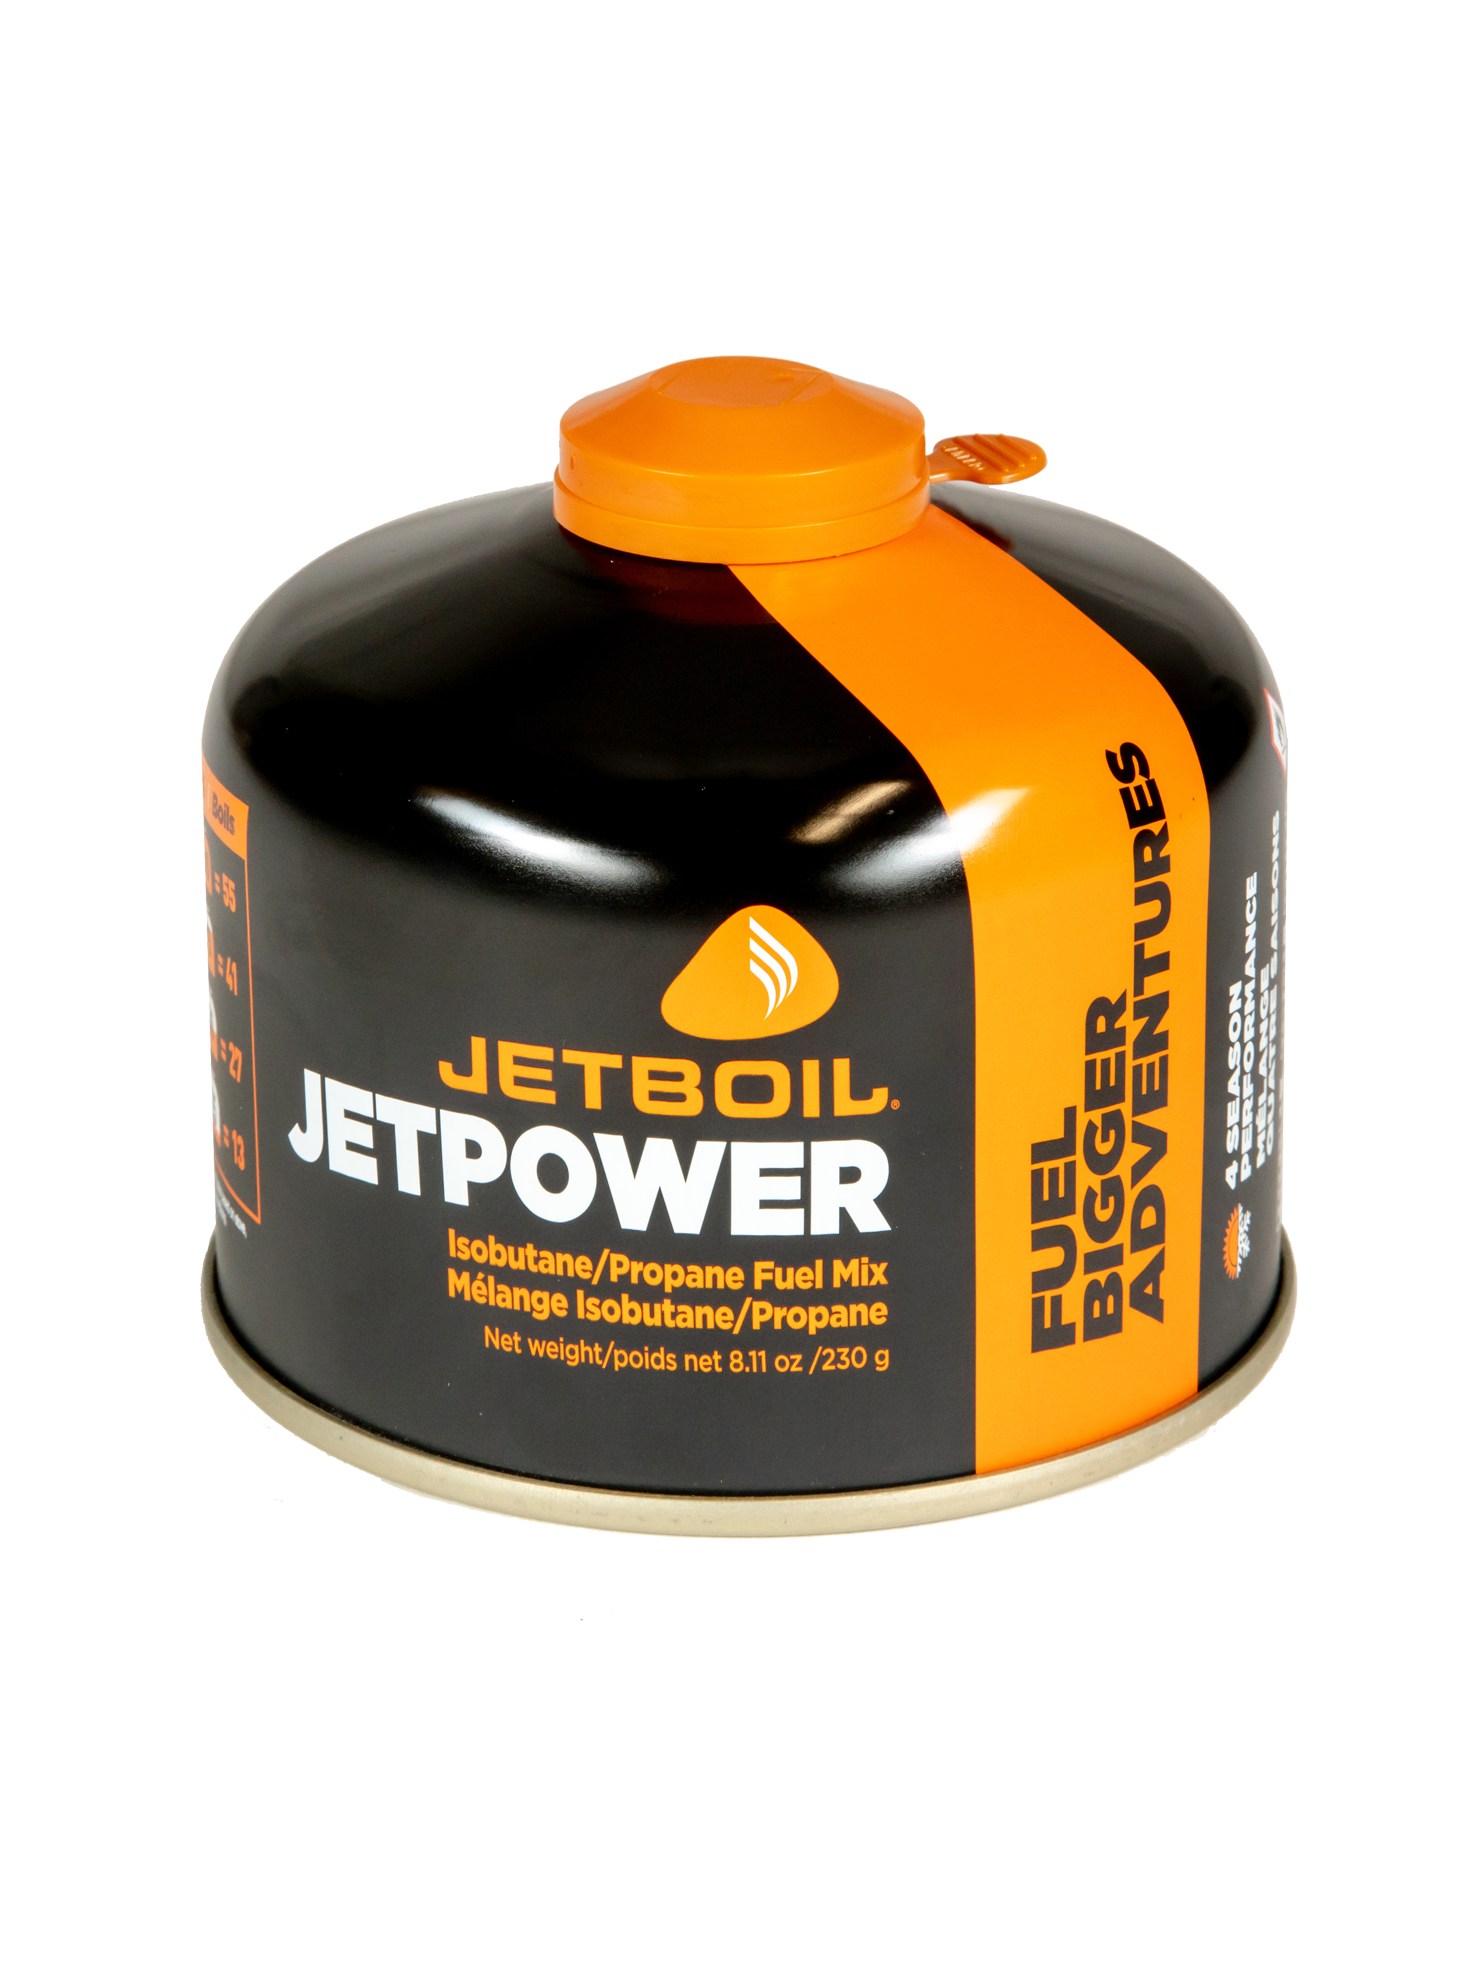 Топливо Jetpower - 8,11 унций / 230г Jetboil